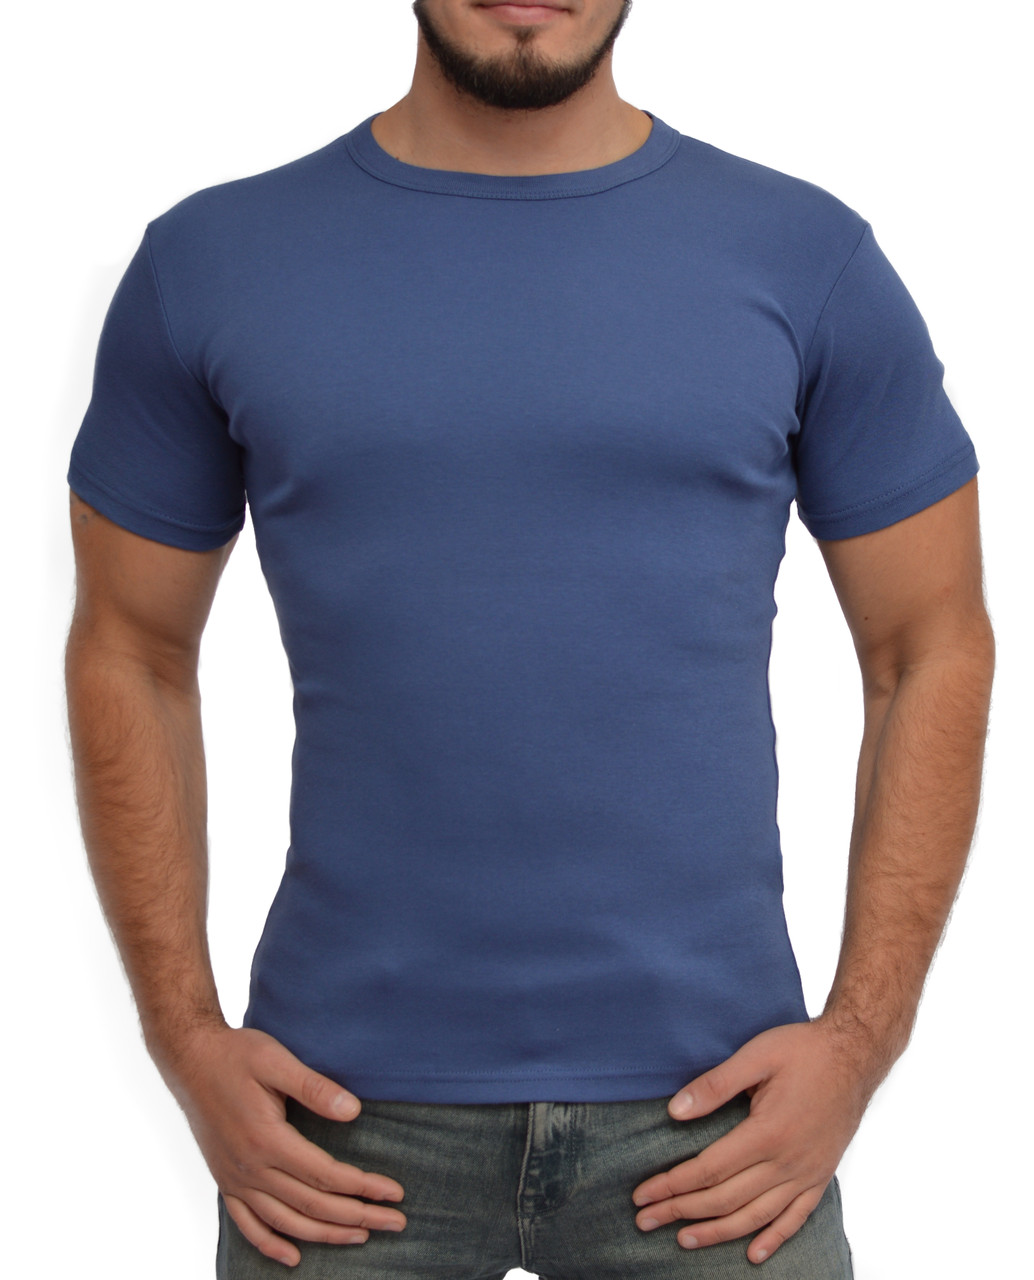 Мужская футболка | цвет джинс | стрейч хлопок | круглое горло | без рисунка XXL